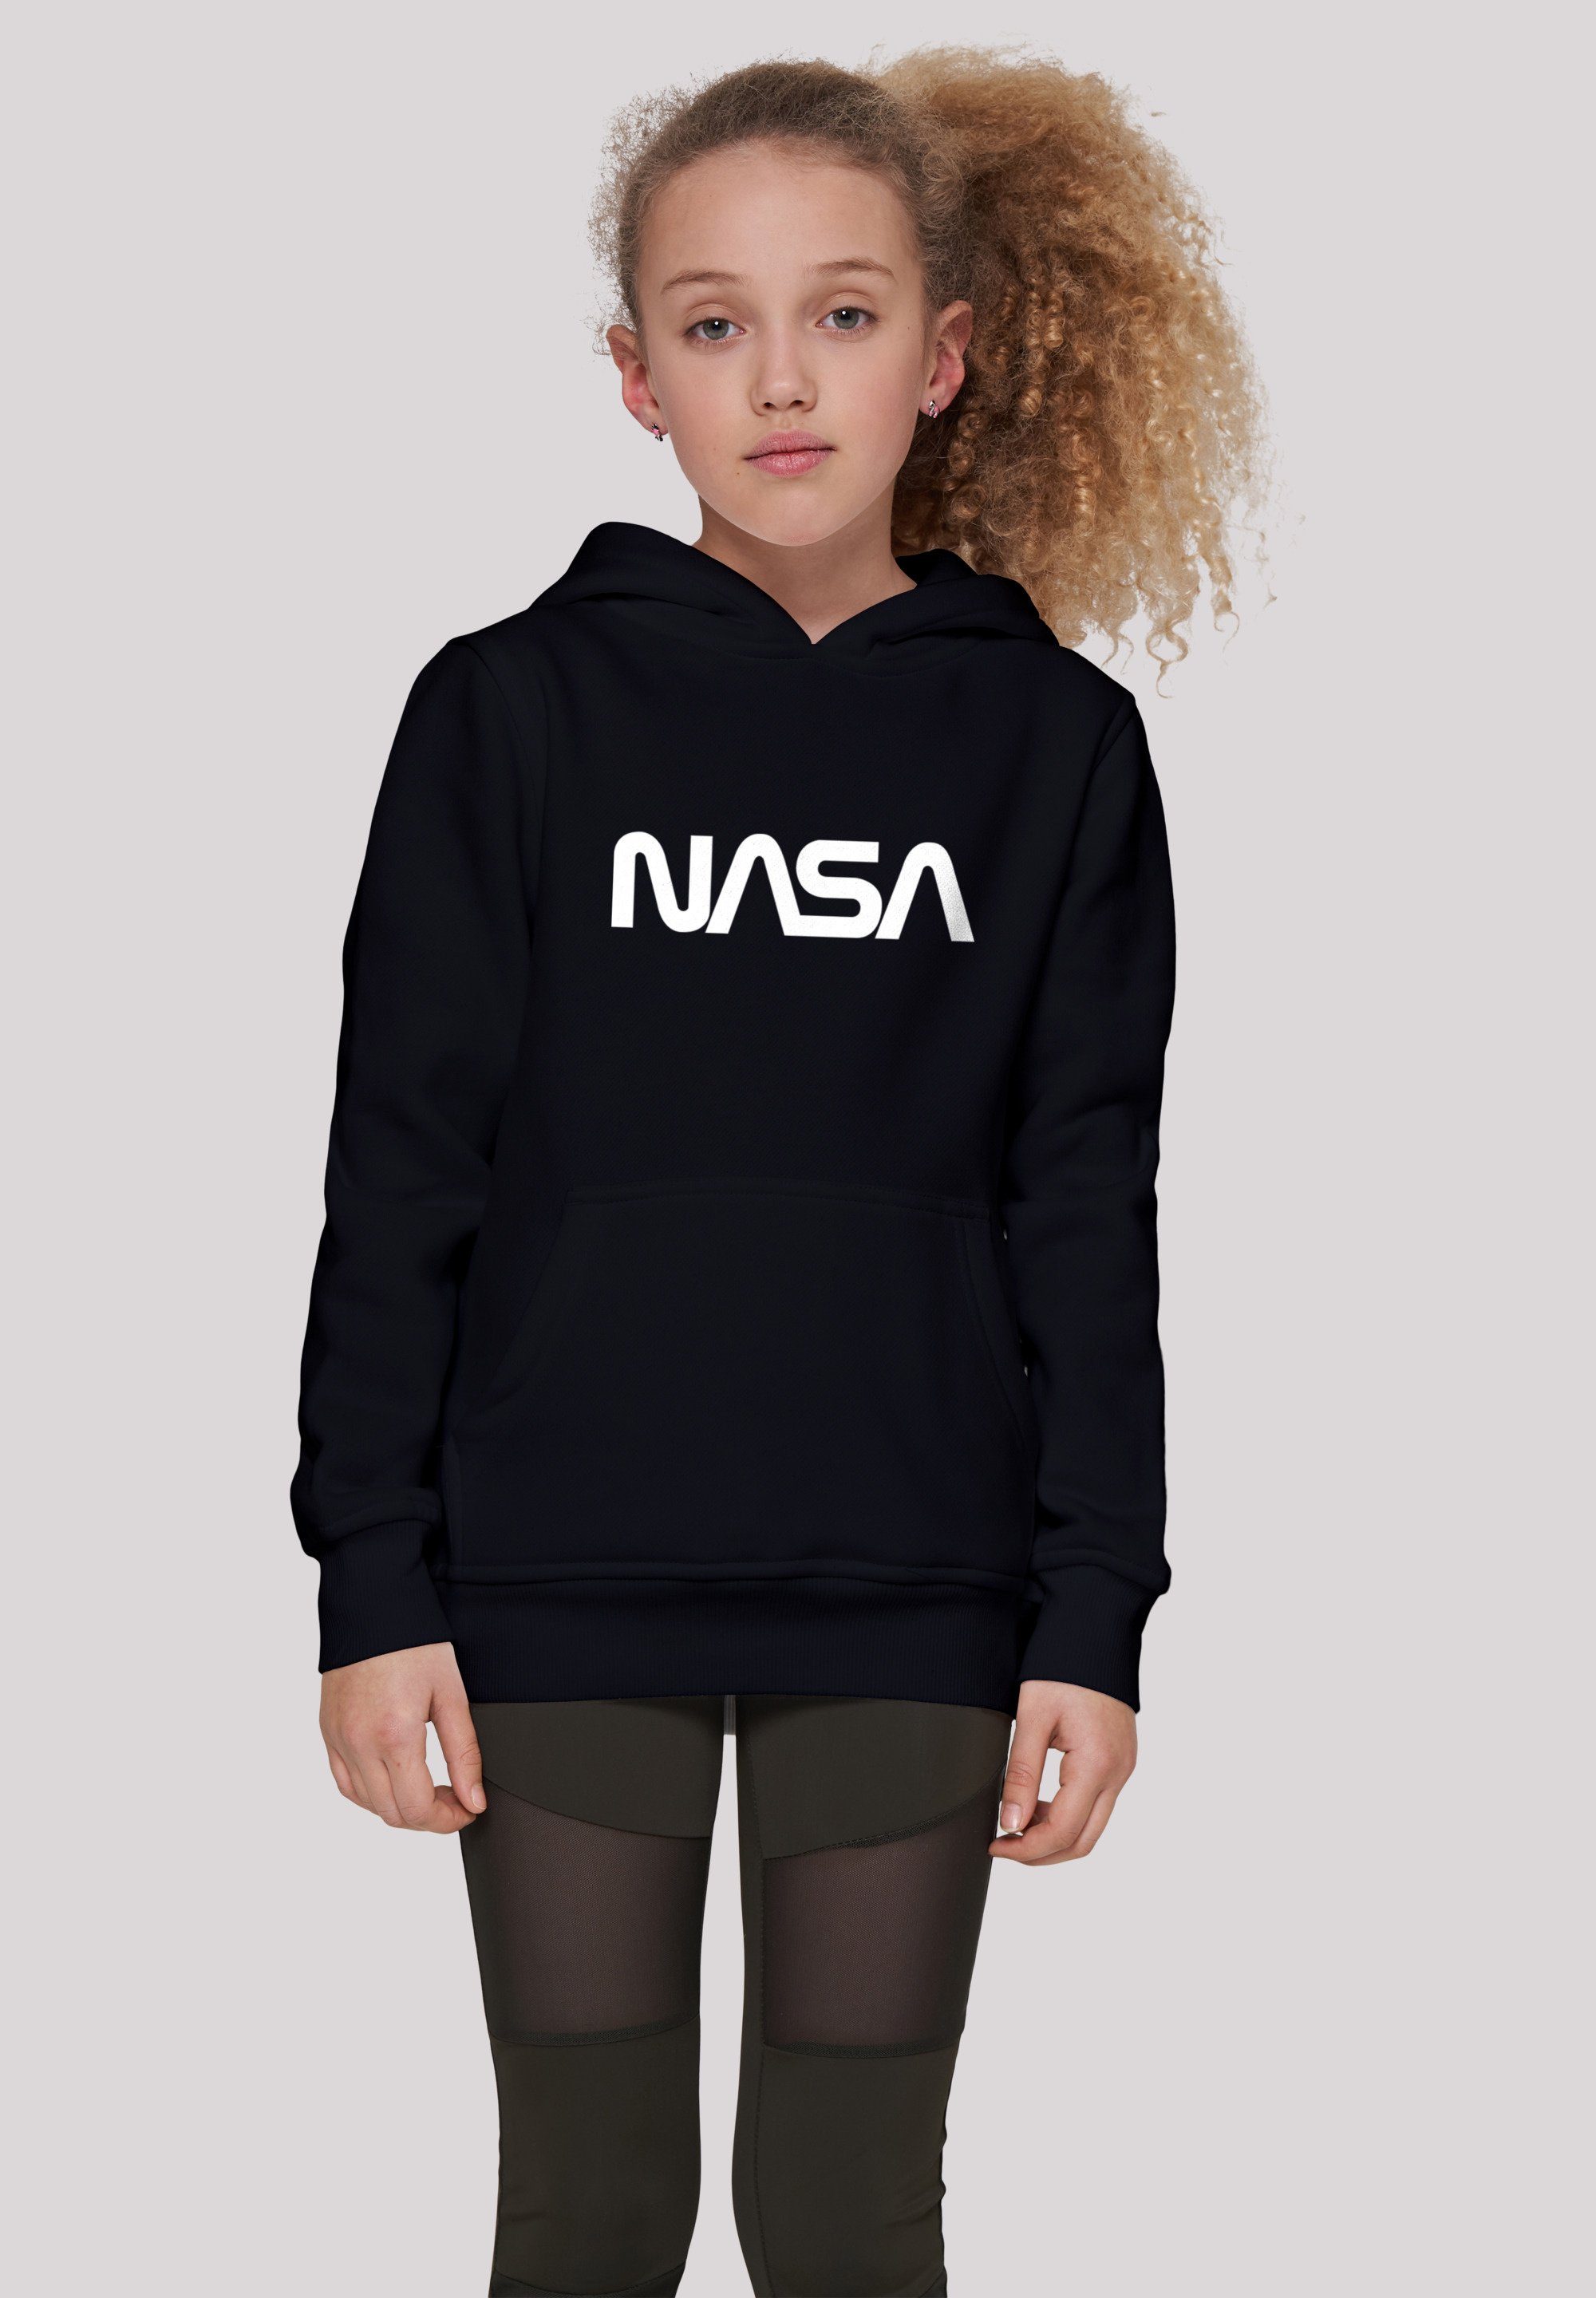 NASA Merch, Kinder,Premium F4NT4STIC Unisex Logo Sweatshirt Jungen,Mädchen,Bedruckt Modern Black